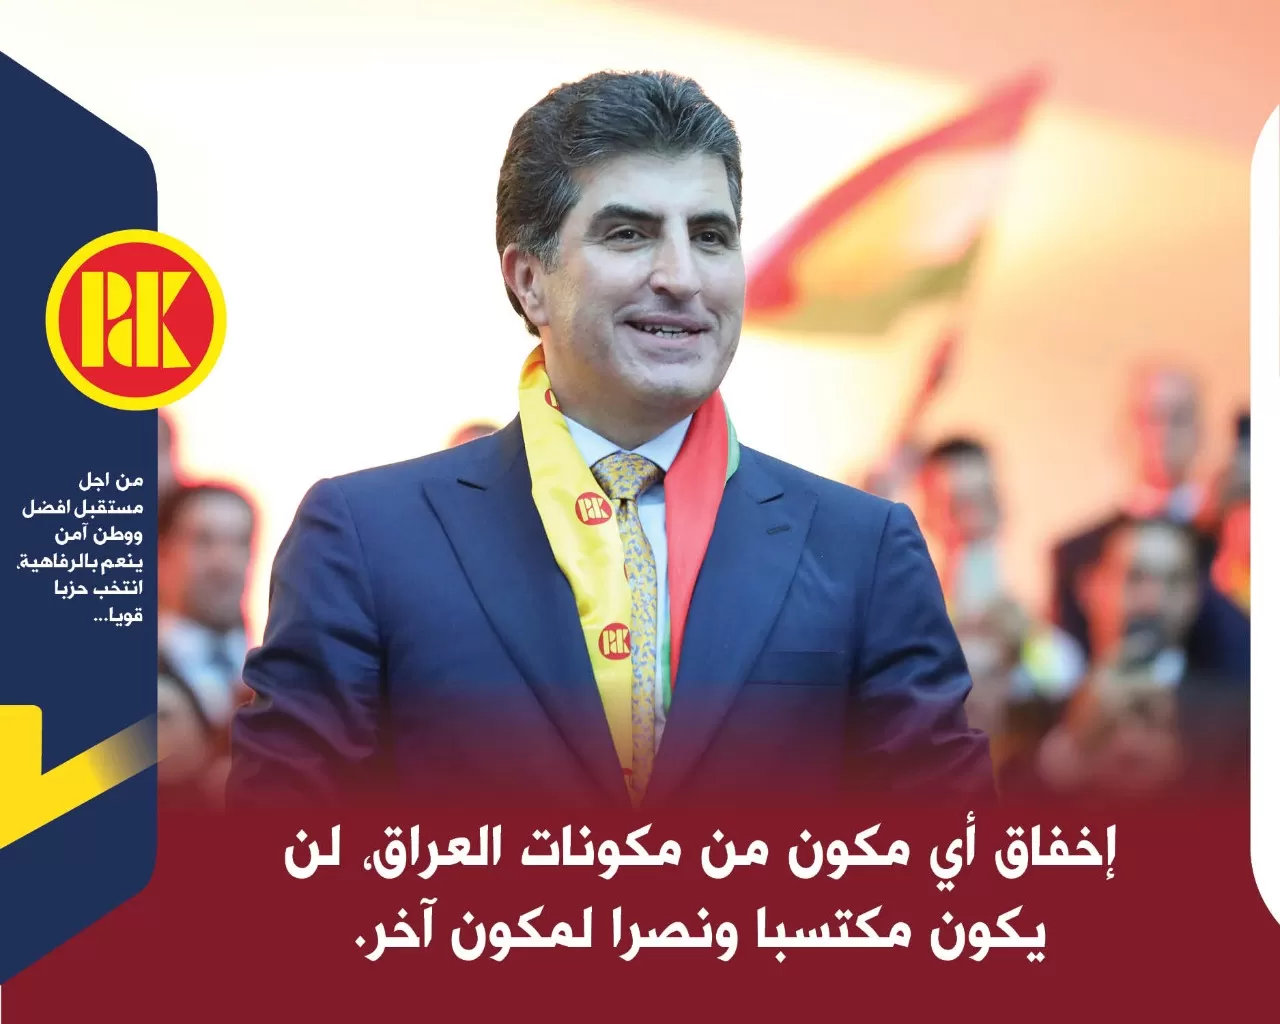 صوّتوا لمرشحي الحزب الديمقراطي الكوردستانى من اجل اجراء تعداد عام في العراق